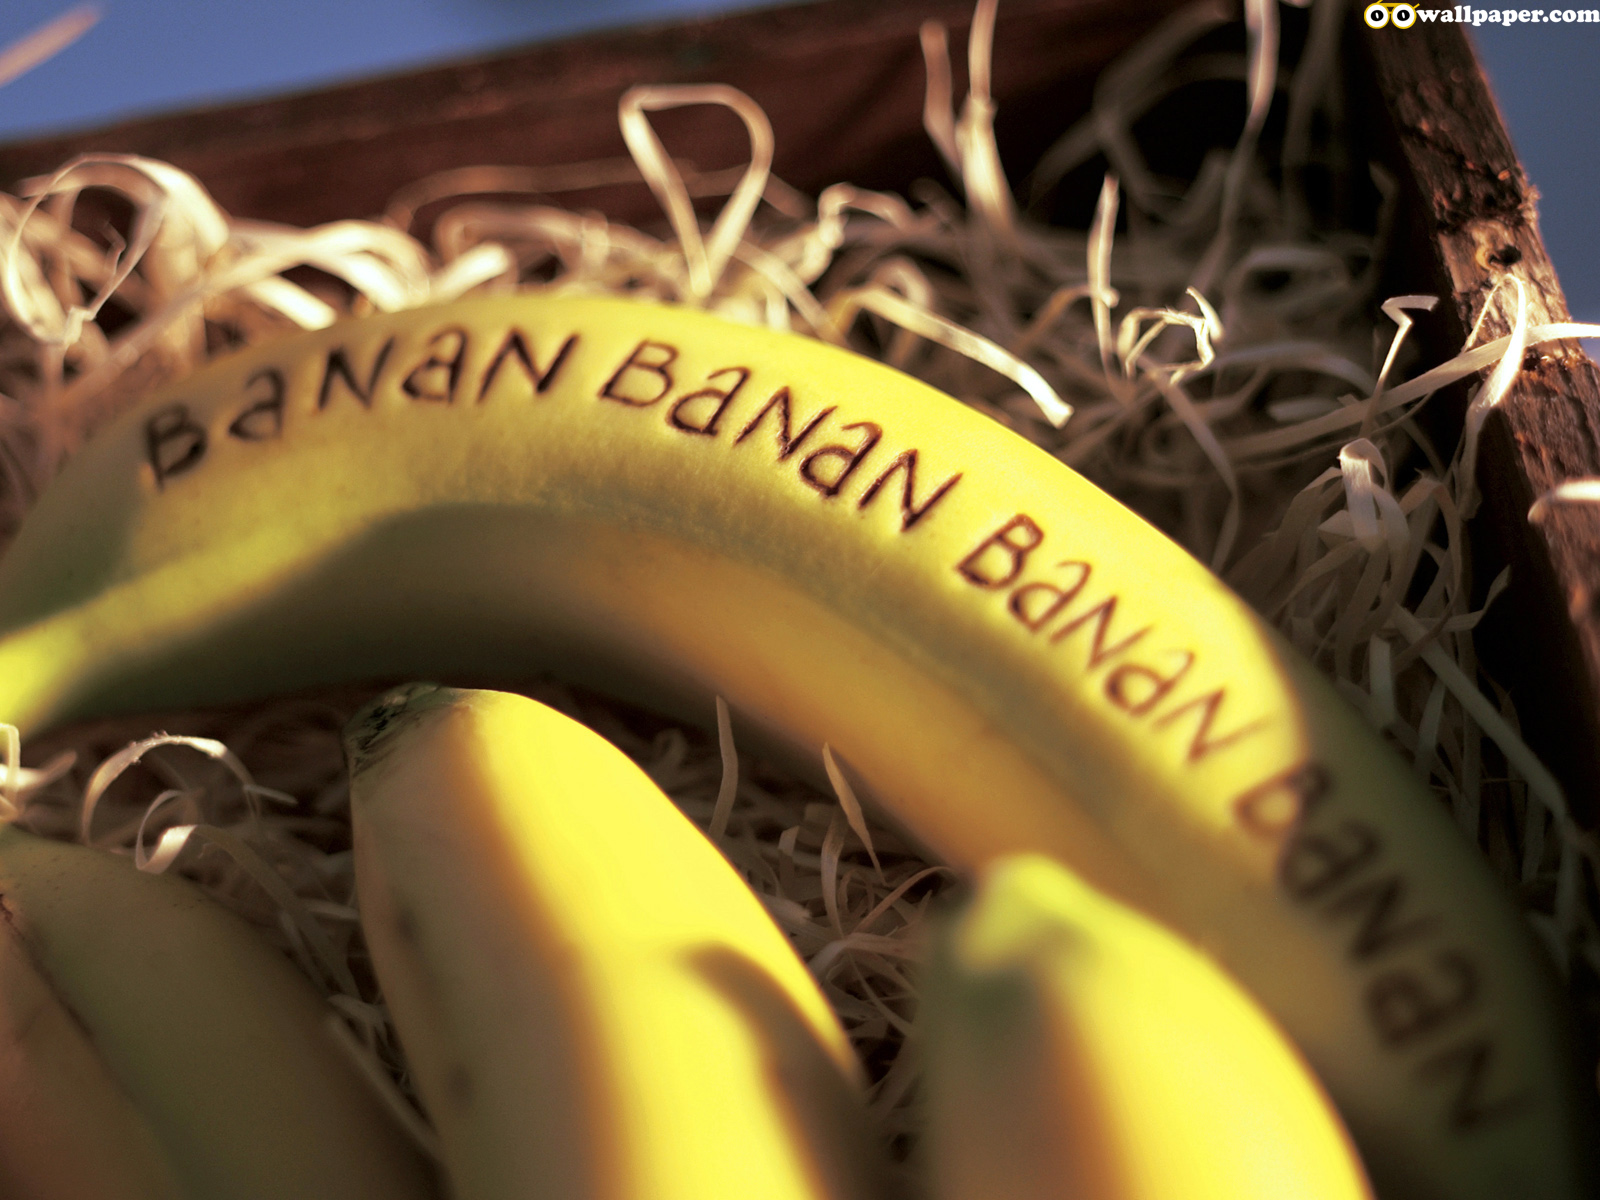 http://2.bp.blogspot.com/-BiupGkybbqg/TxkahaOSuiI/AAAAAAAAD0c/sgqqFAMmPaw/s1600/oo_food_fruit_banana.jpg